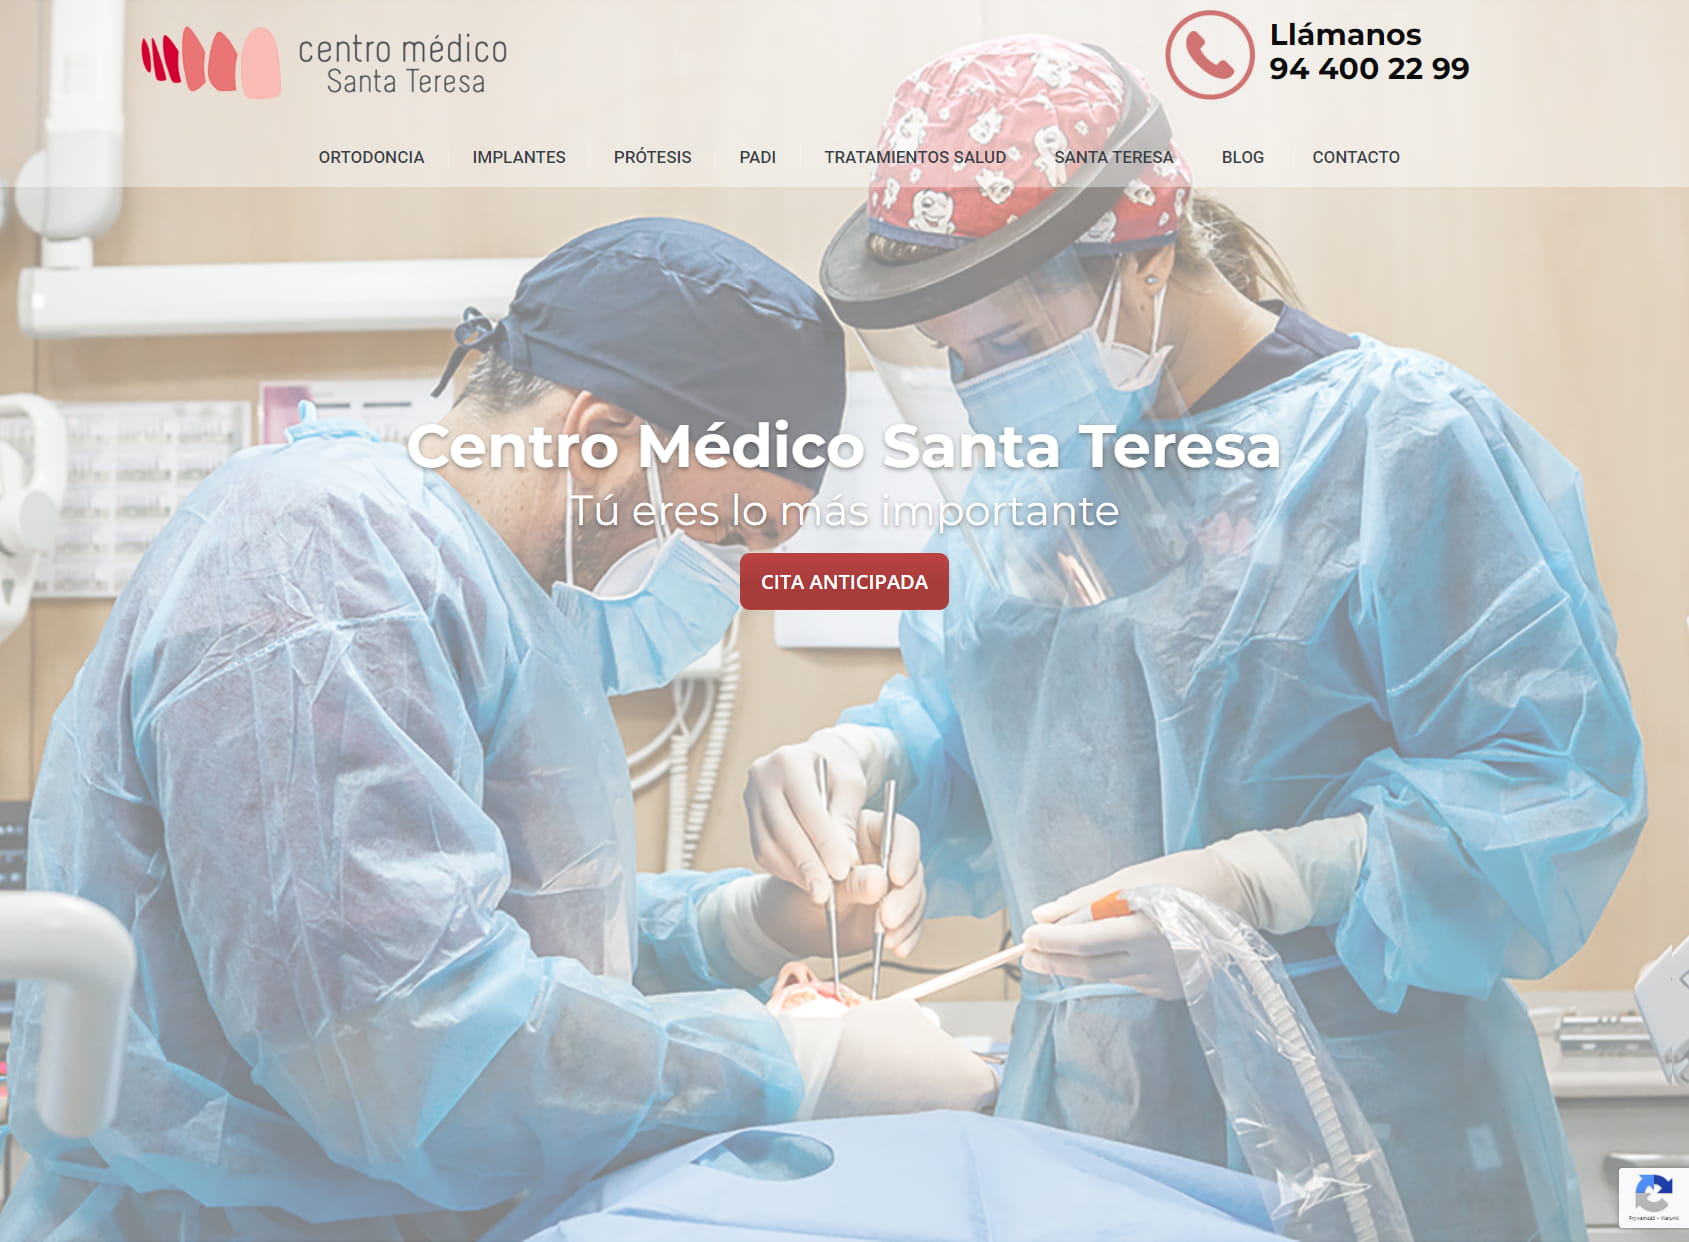 Centro Médico Santa Teresa